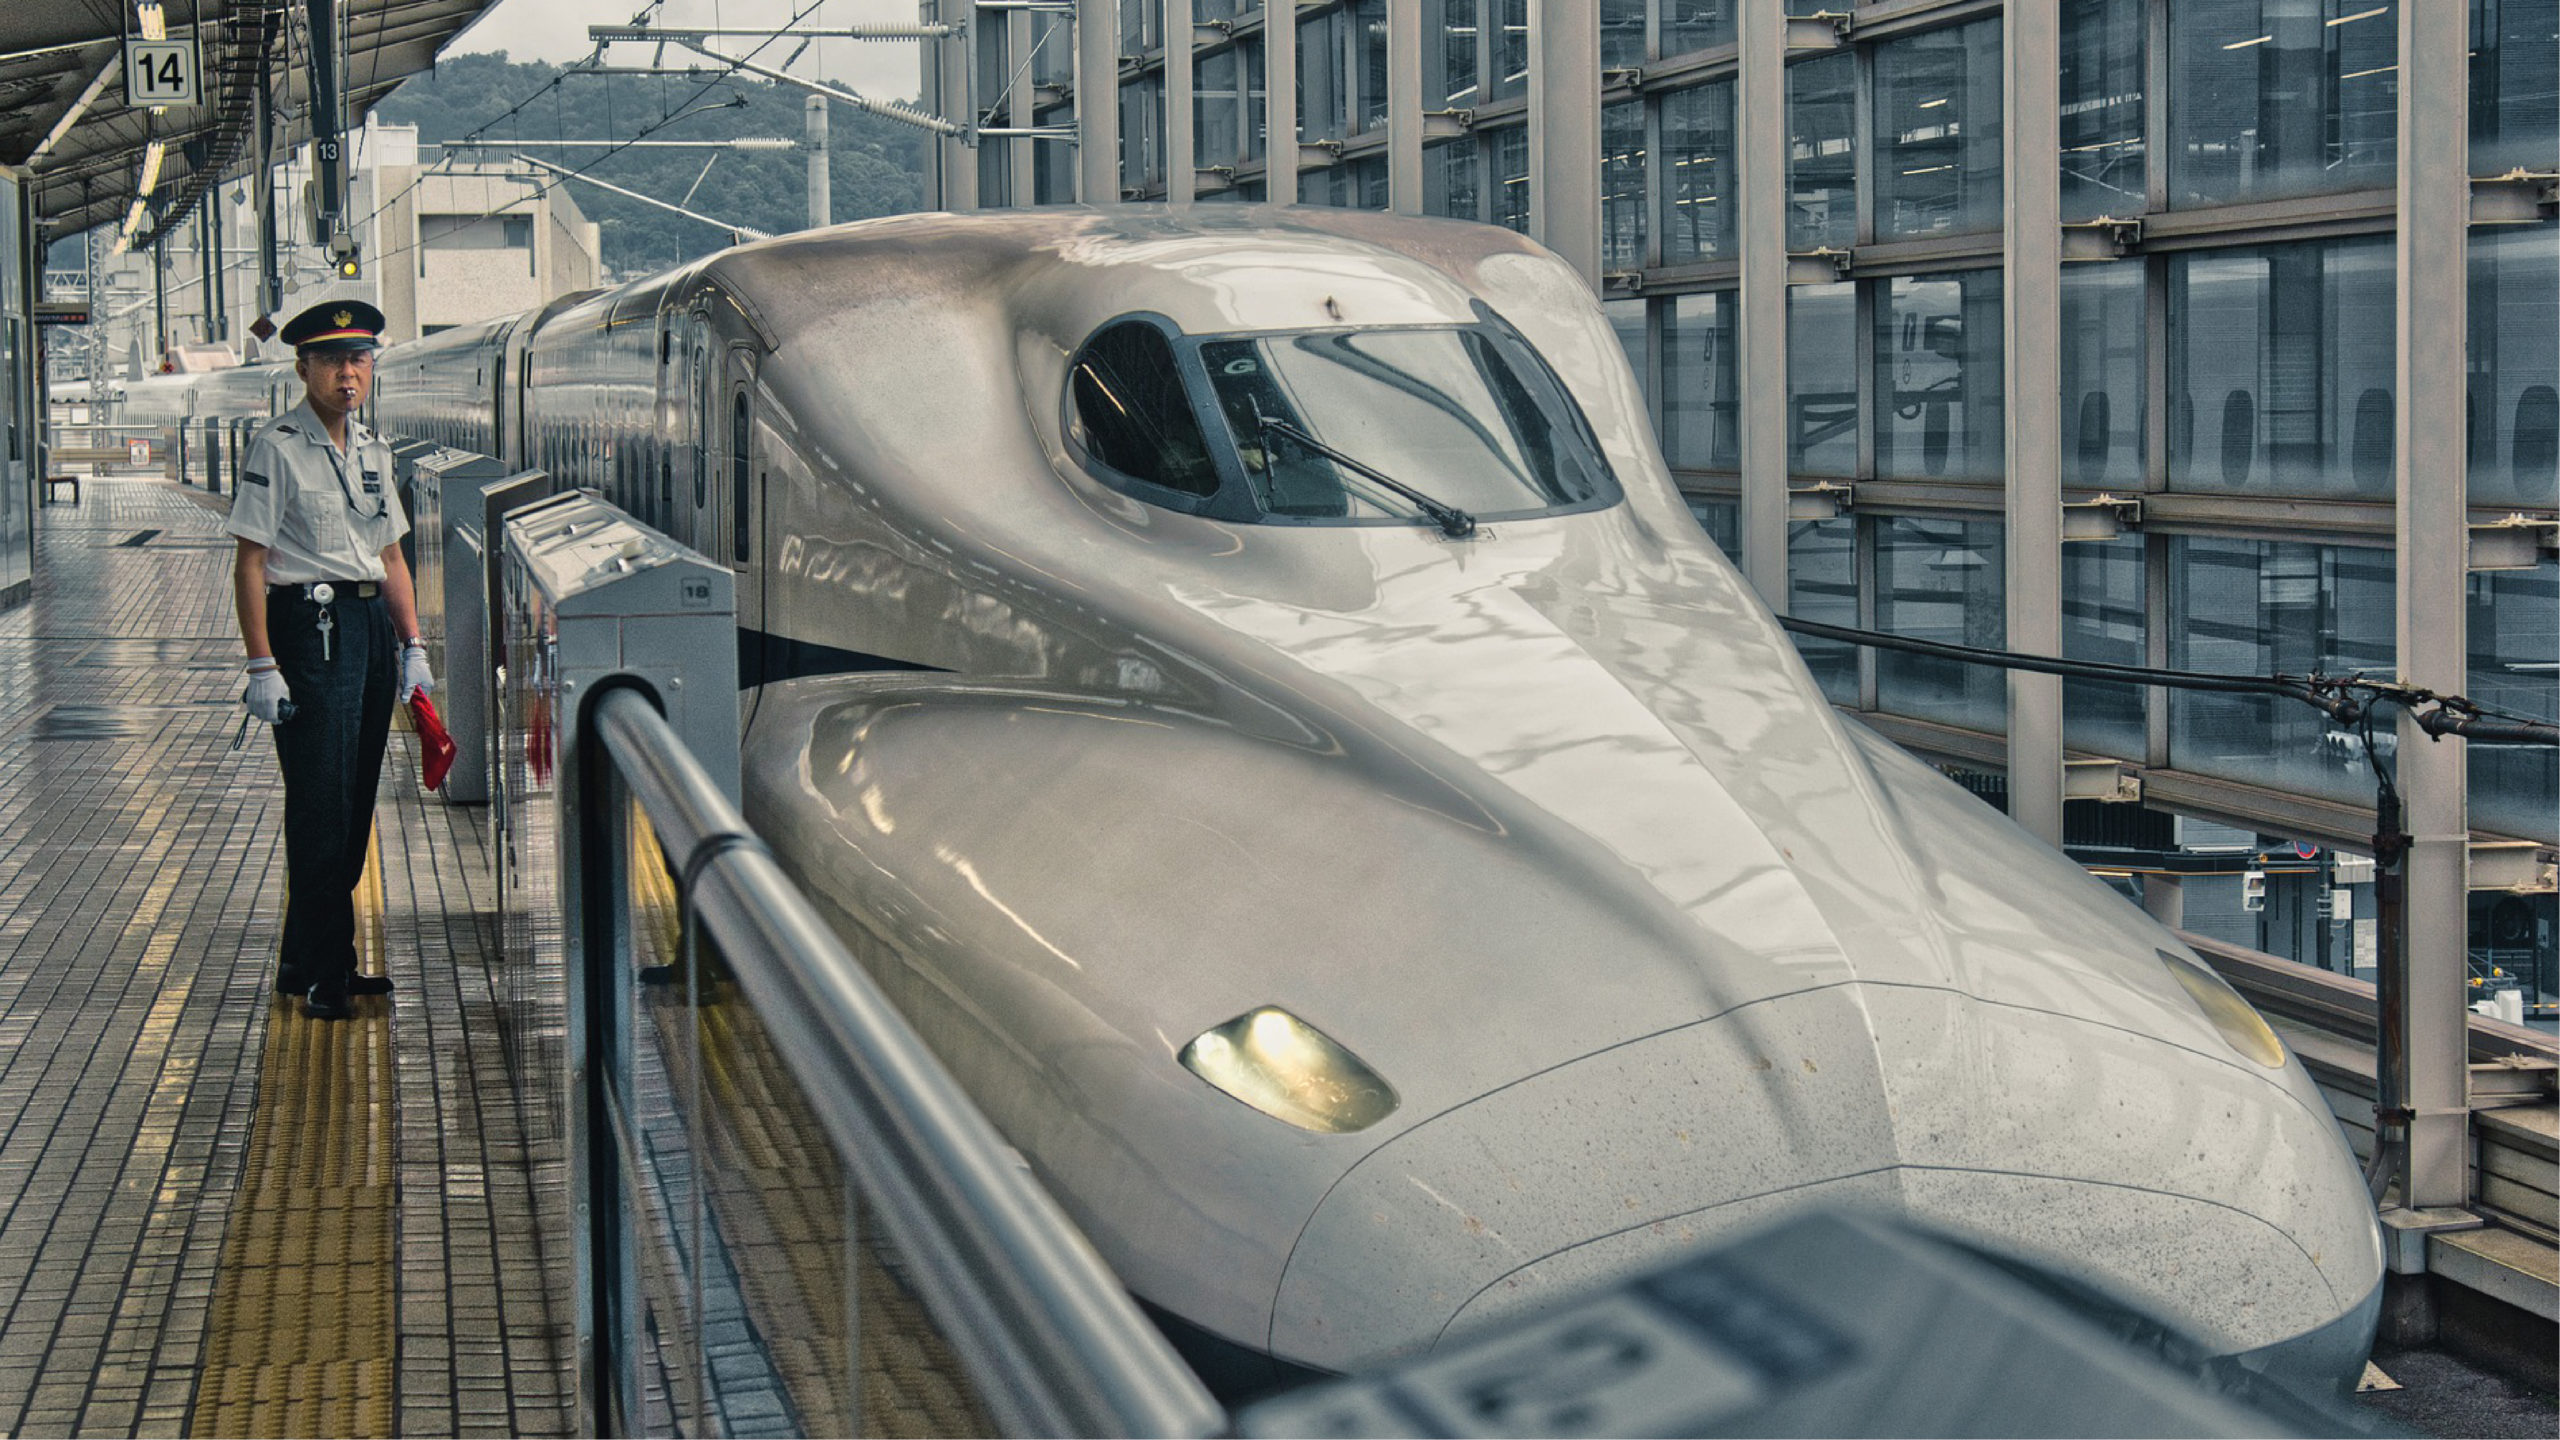 perfume Rafflesia Arnoldi asustado Japón empieza a probar trenes bala sin conductores